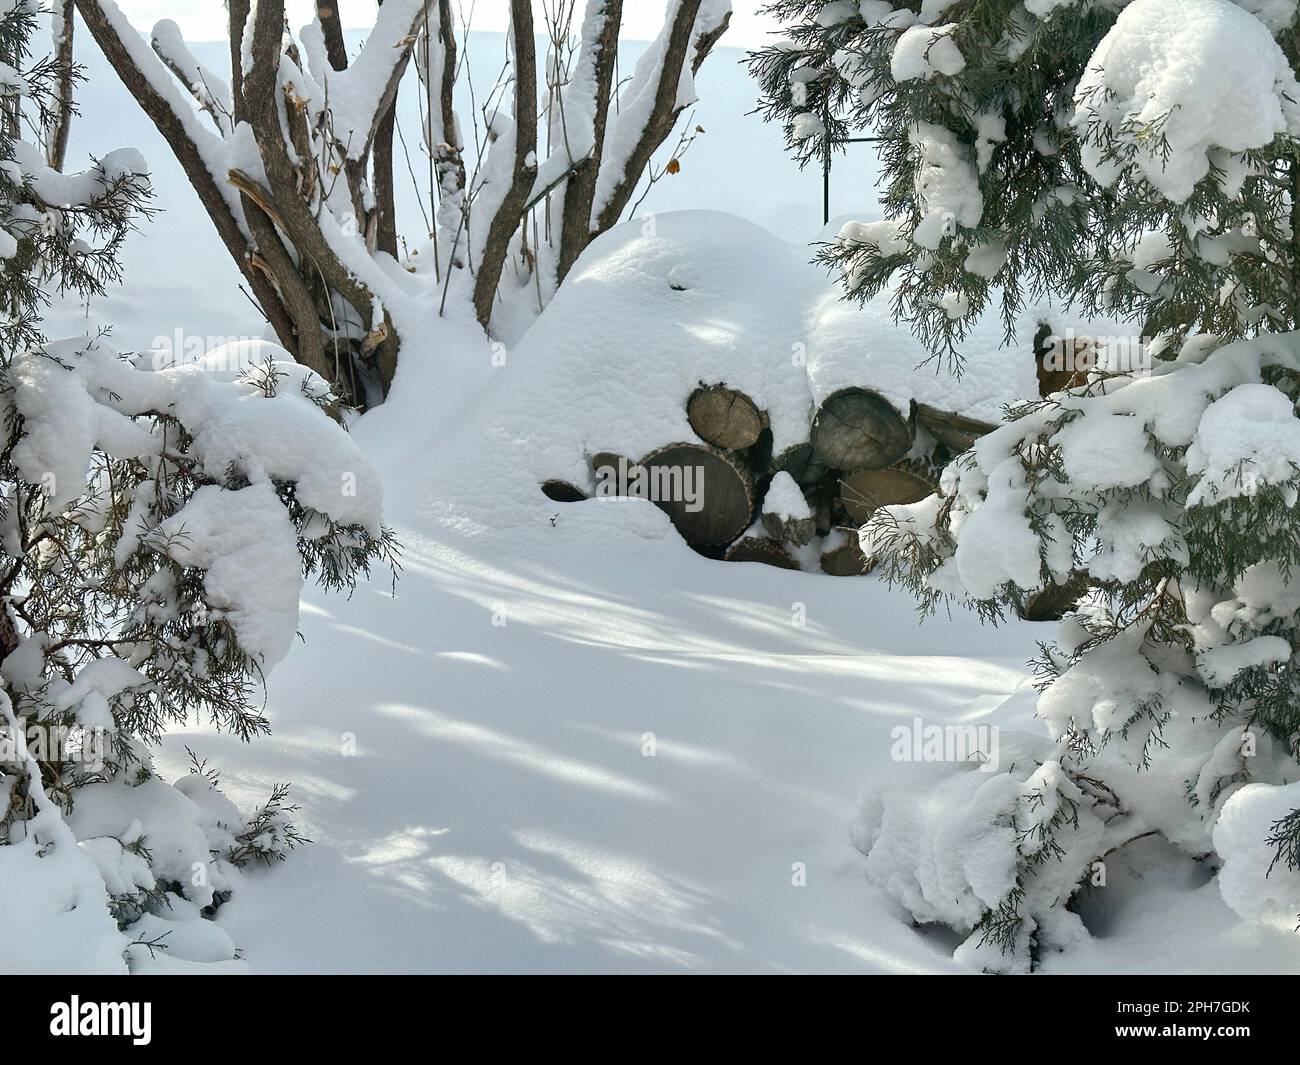 Il panoramico sentiero invernale con luce e ombra sulla neve è circondato da un mucchio di tronchi, pini e cespugli. La neve fresca caduta sul terreno rende pesanti i rami. Foto Stock